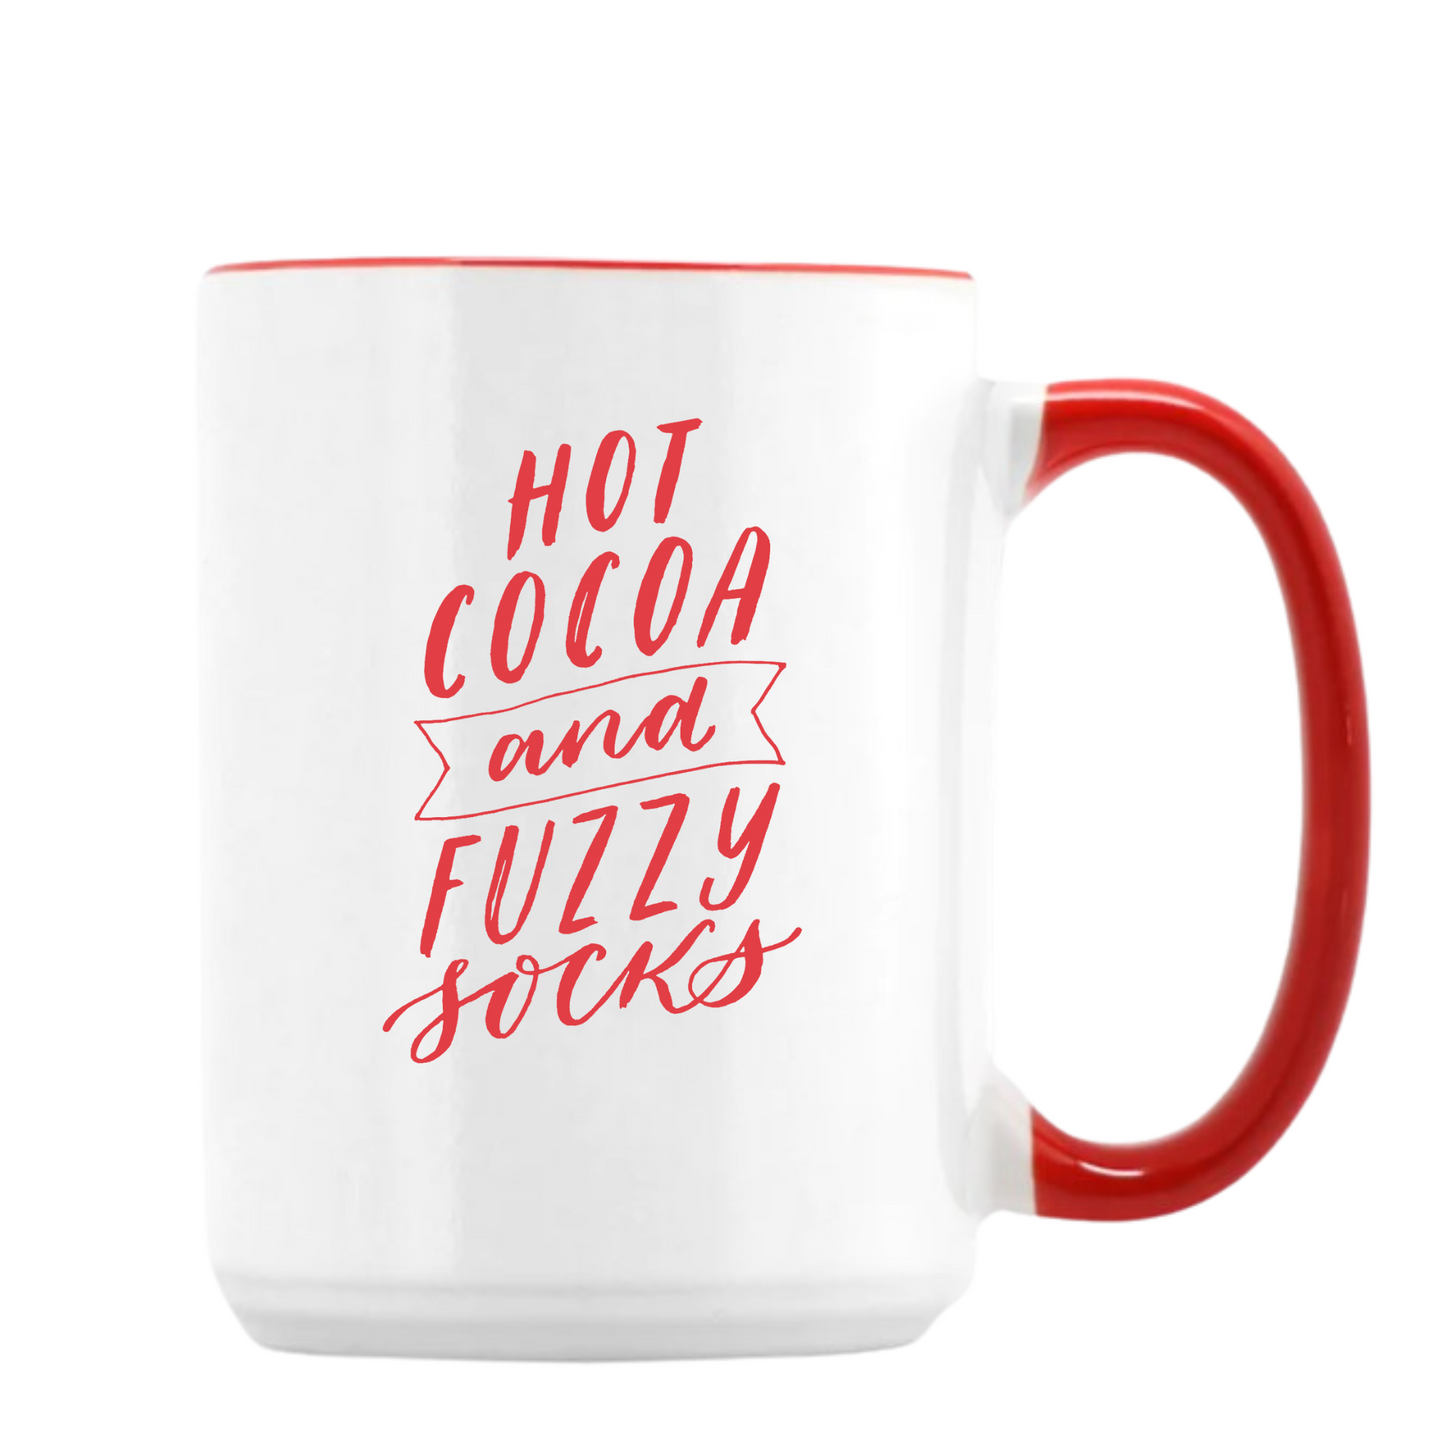 Hot Cocoa and Fuzzy Socks mug